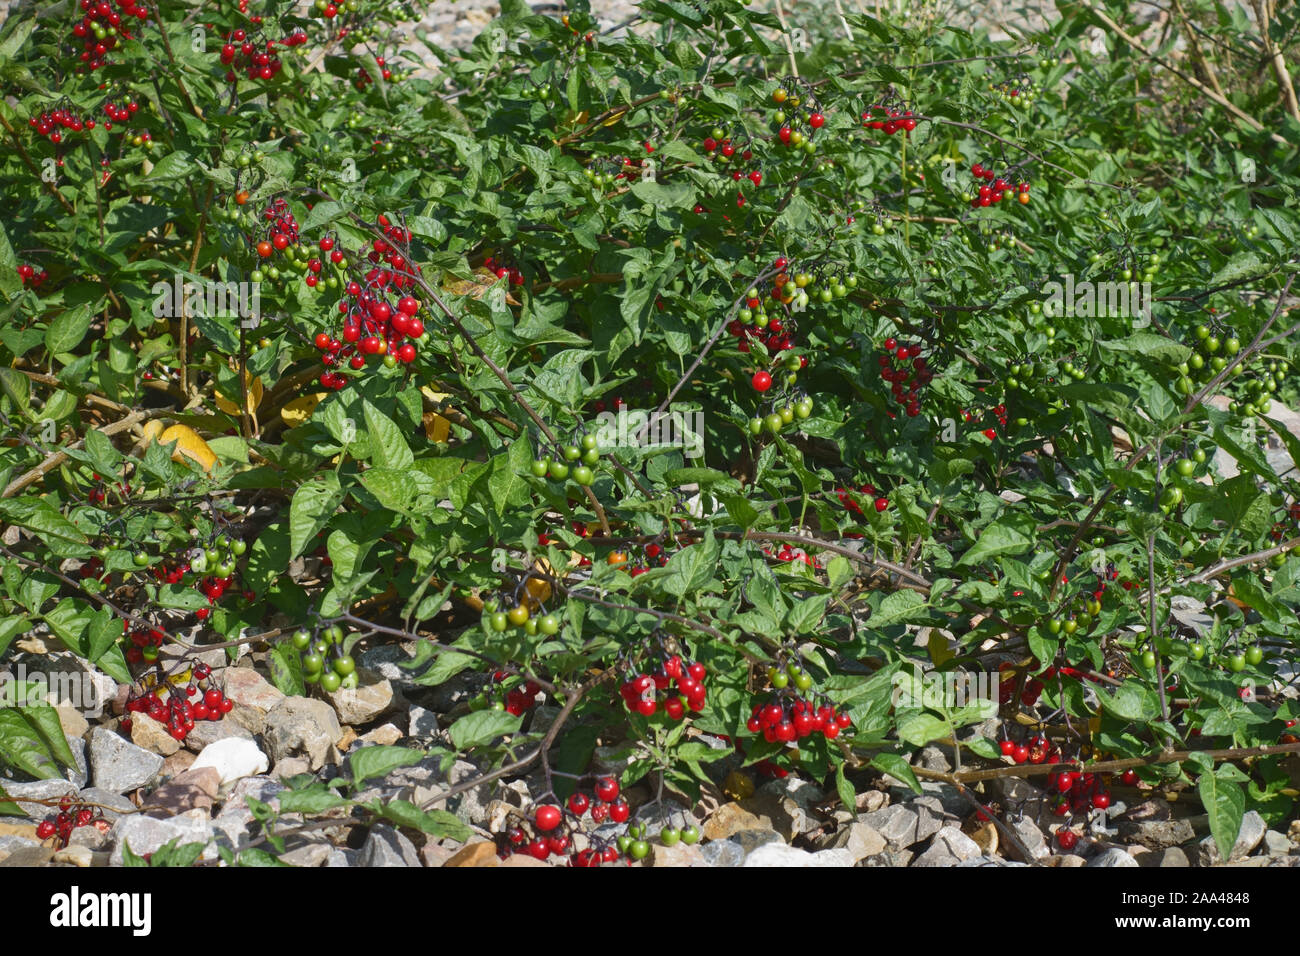 Nightshate bittersweel ou ligneuses (Solanum dulcamara) plante aux baies rouge vif poussant dans le gravier à côté d'une voie de chemin de fer, Septembre Banque D'Images